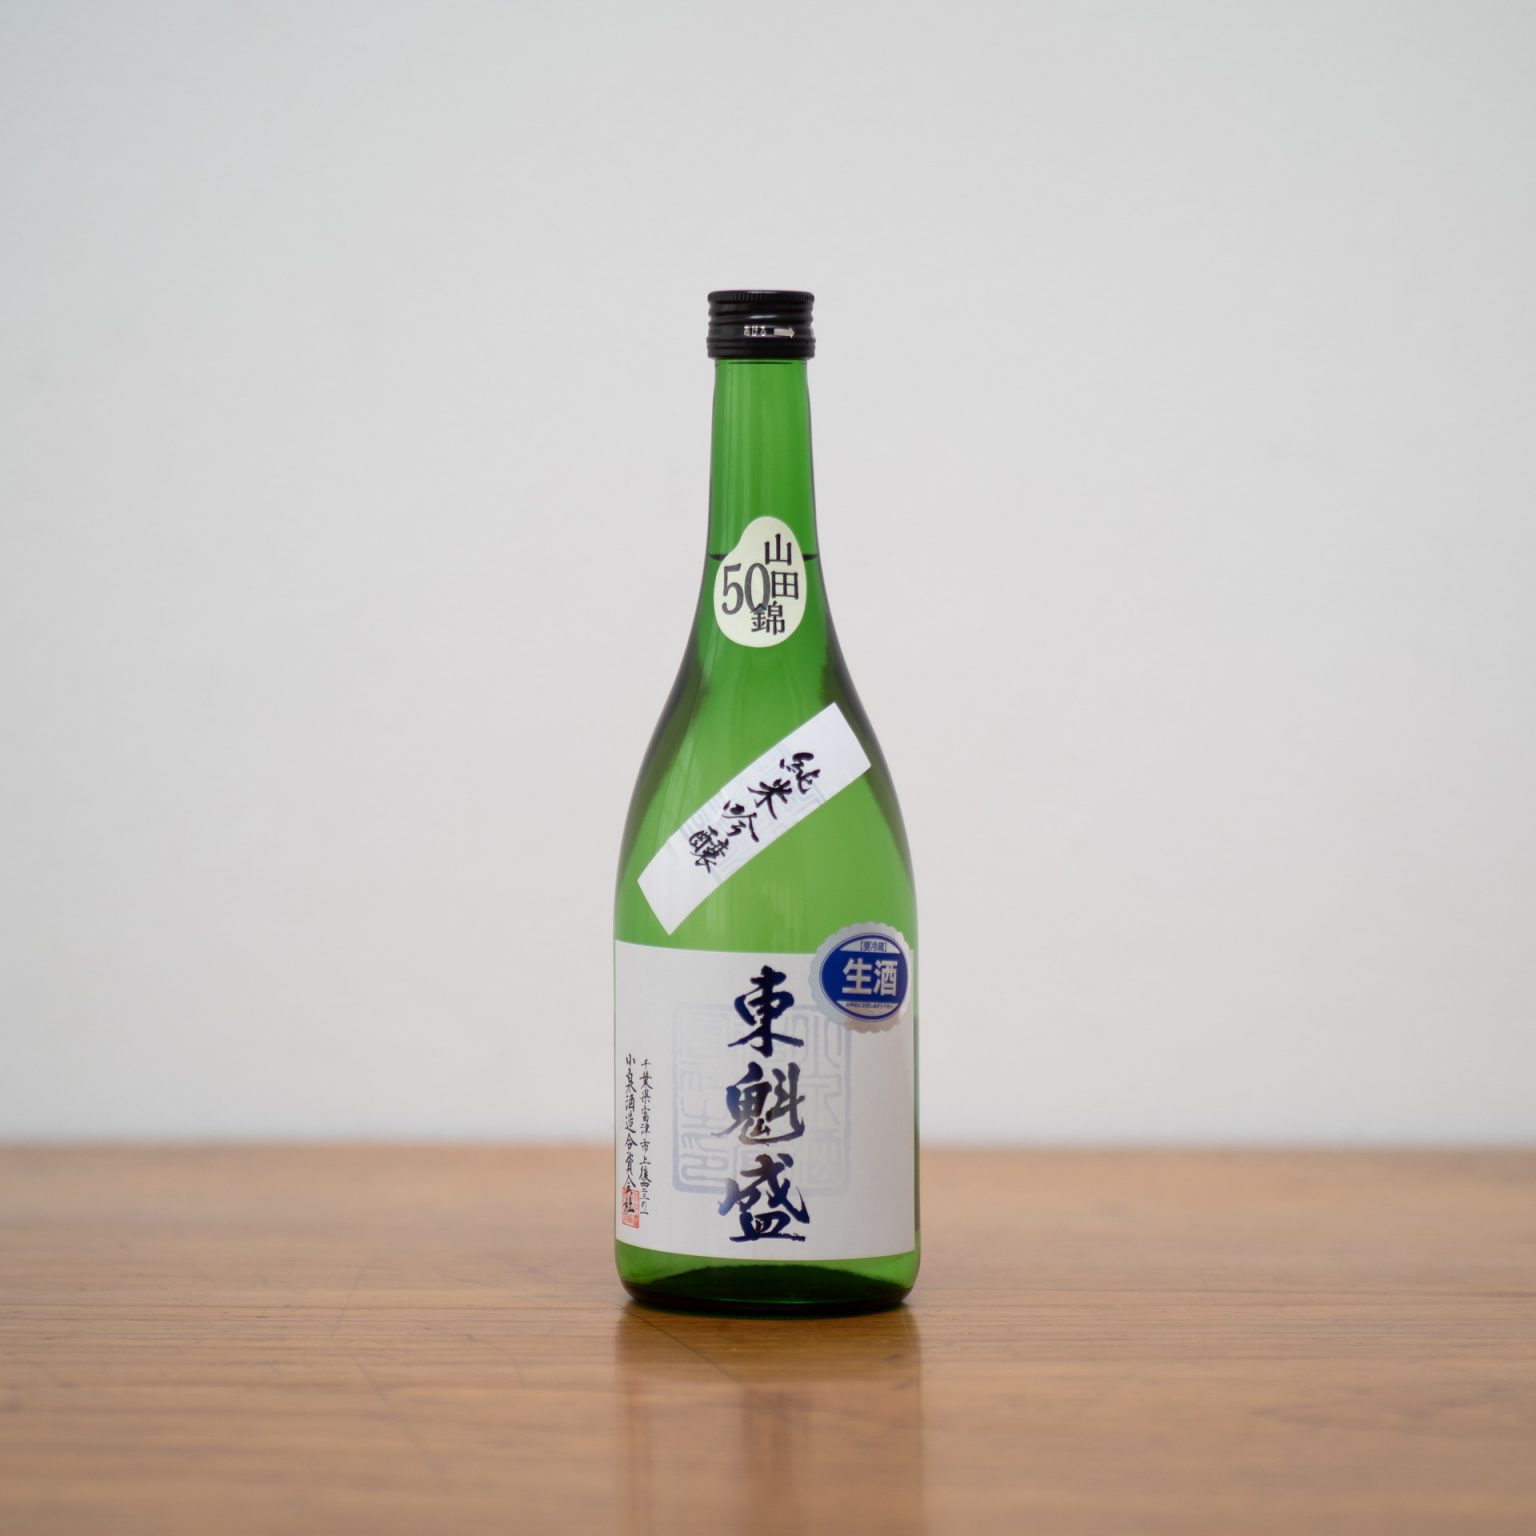 千葉県富津市にある小泉酒造の人気酒「東魁盛」。冬限定の生原酒は、米の甘みとふくよかな香り、キレもあってクリアな酸と、申し分ないおいしさ。